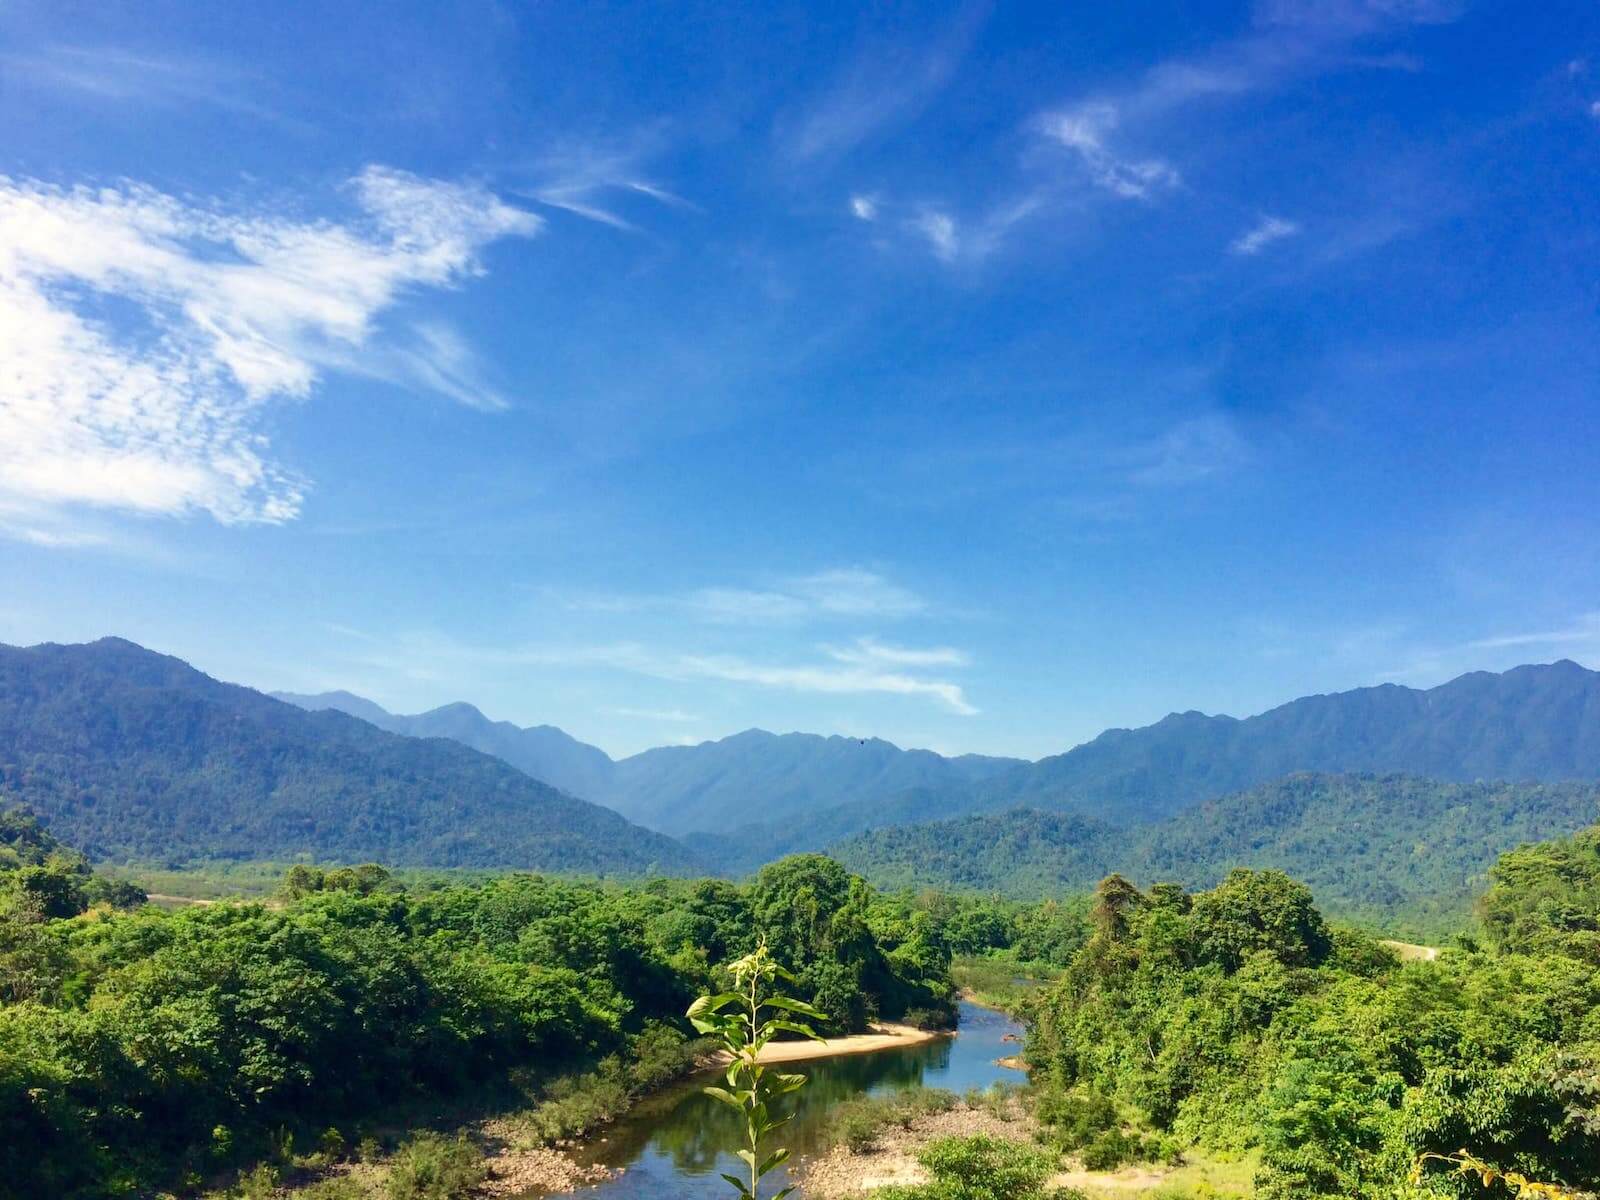 Vũ Quang National Park